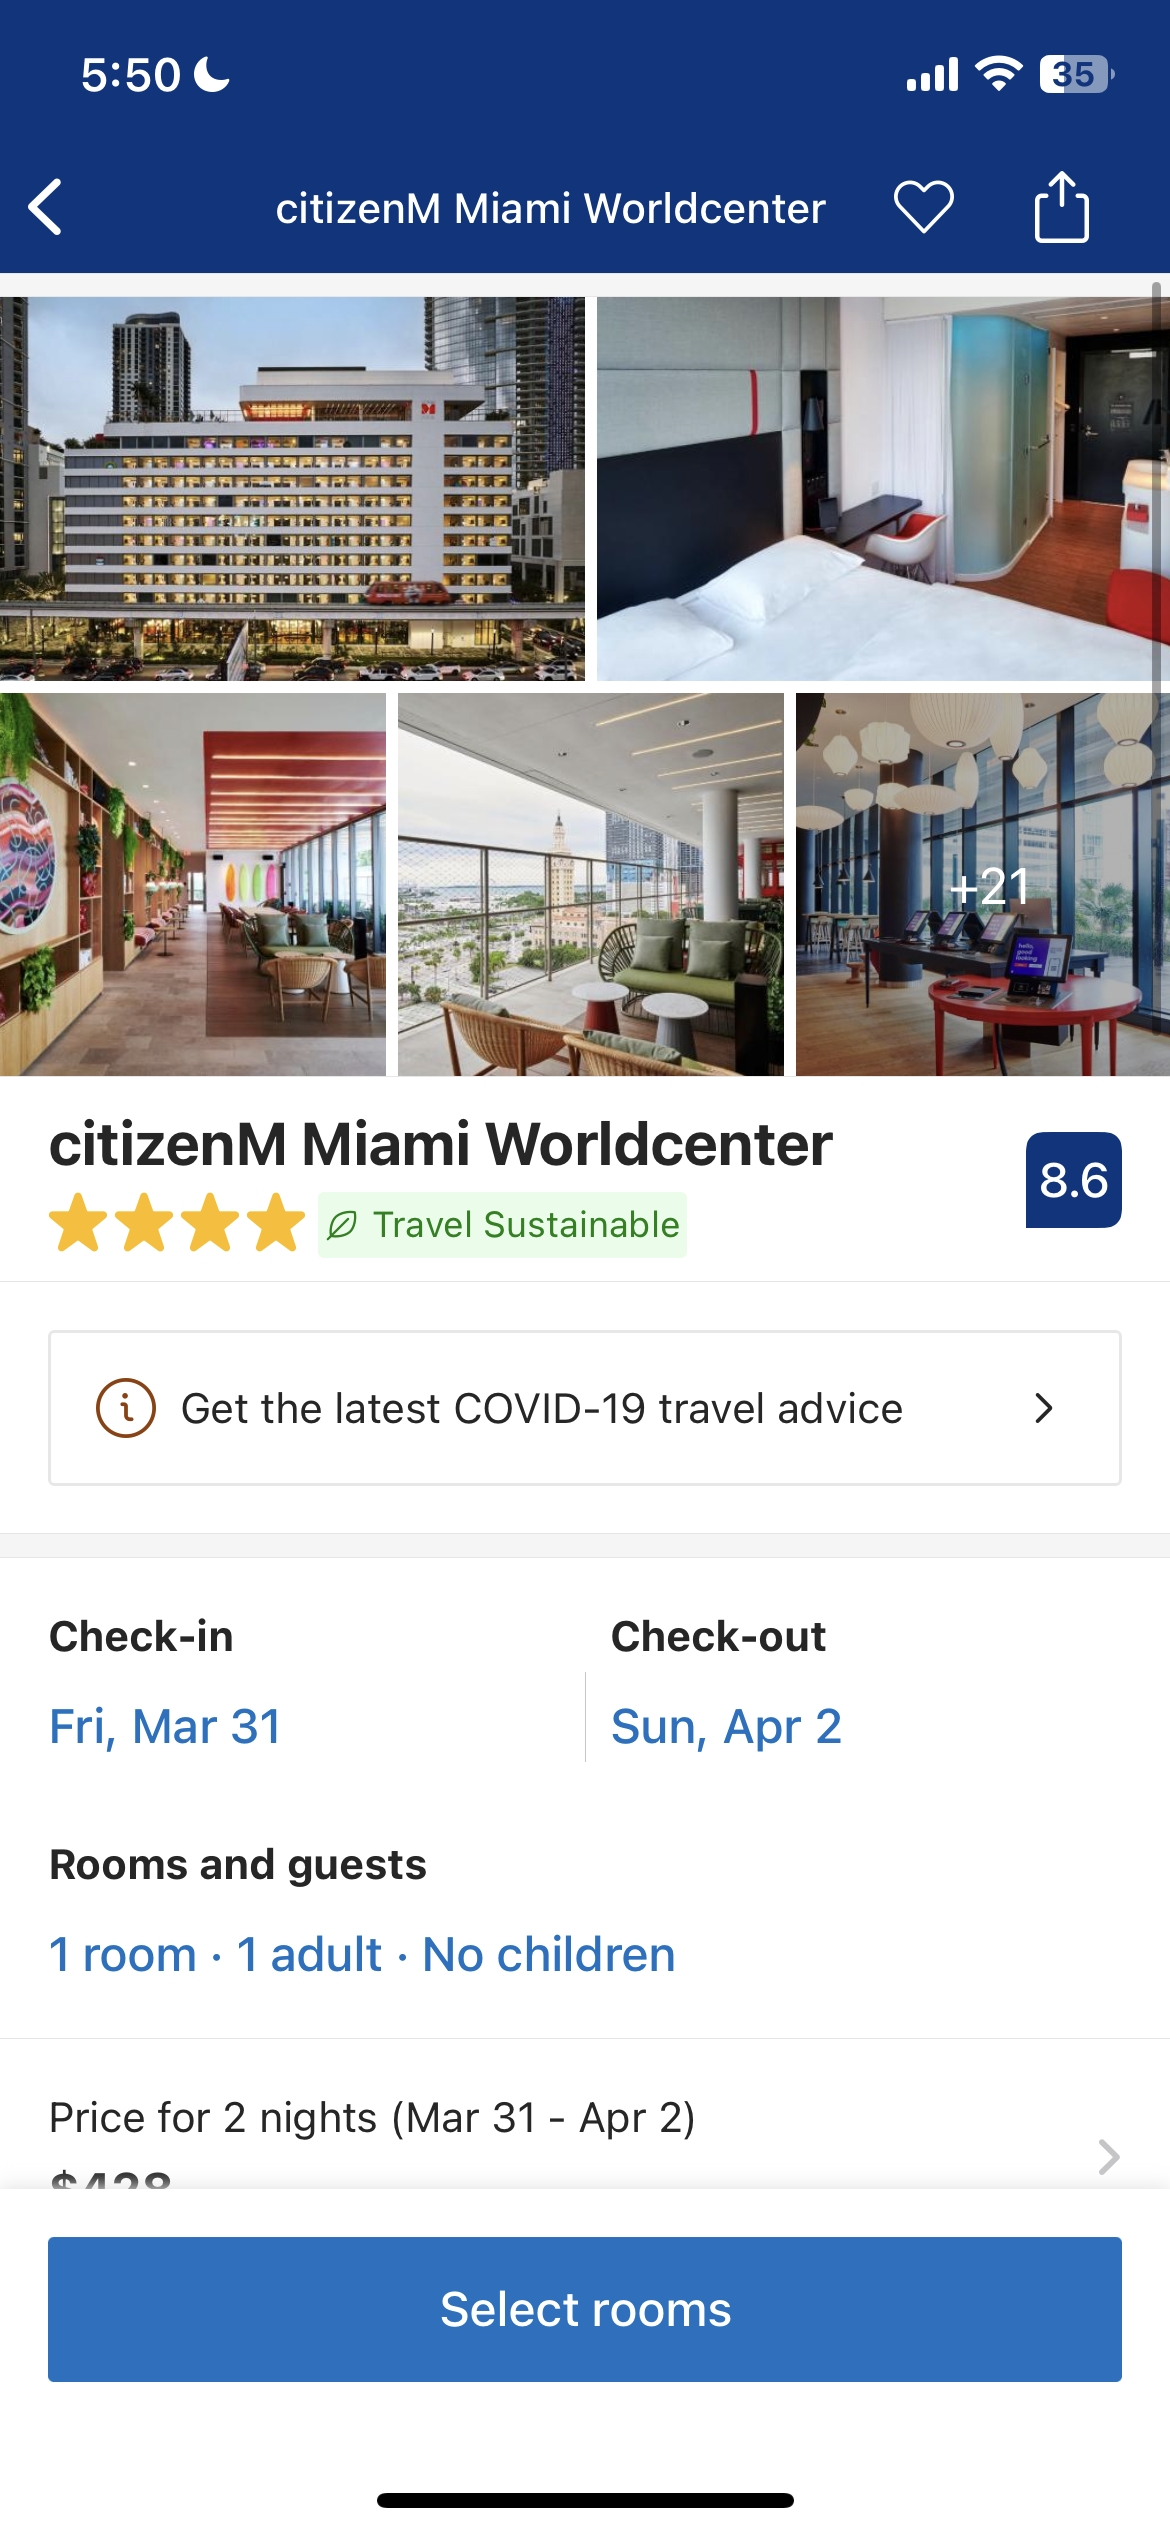 citizenM Miami Worldcenter